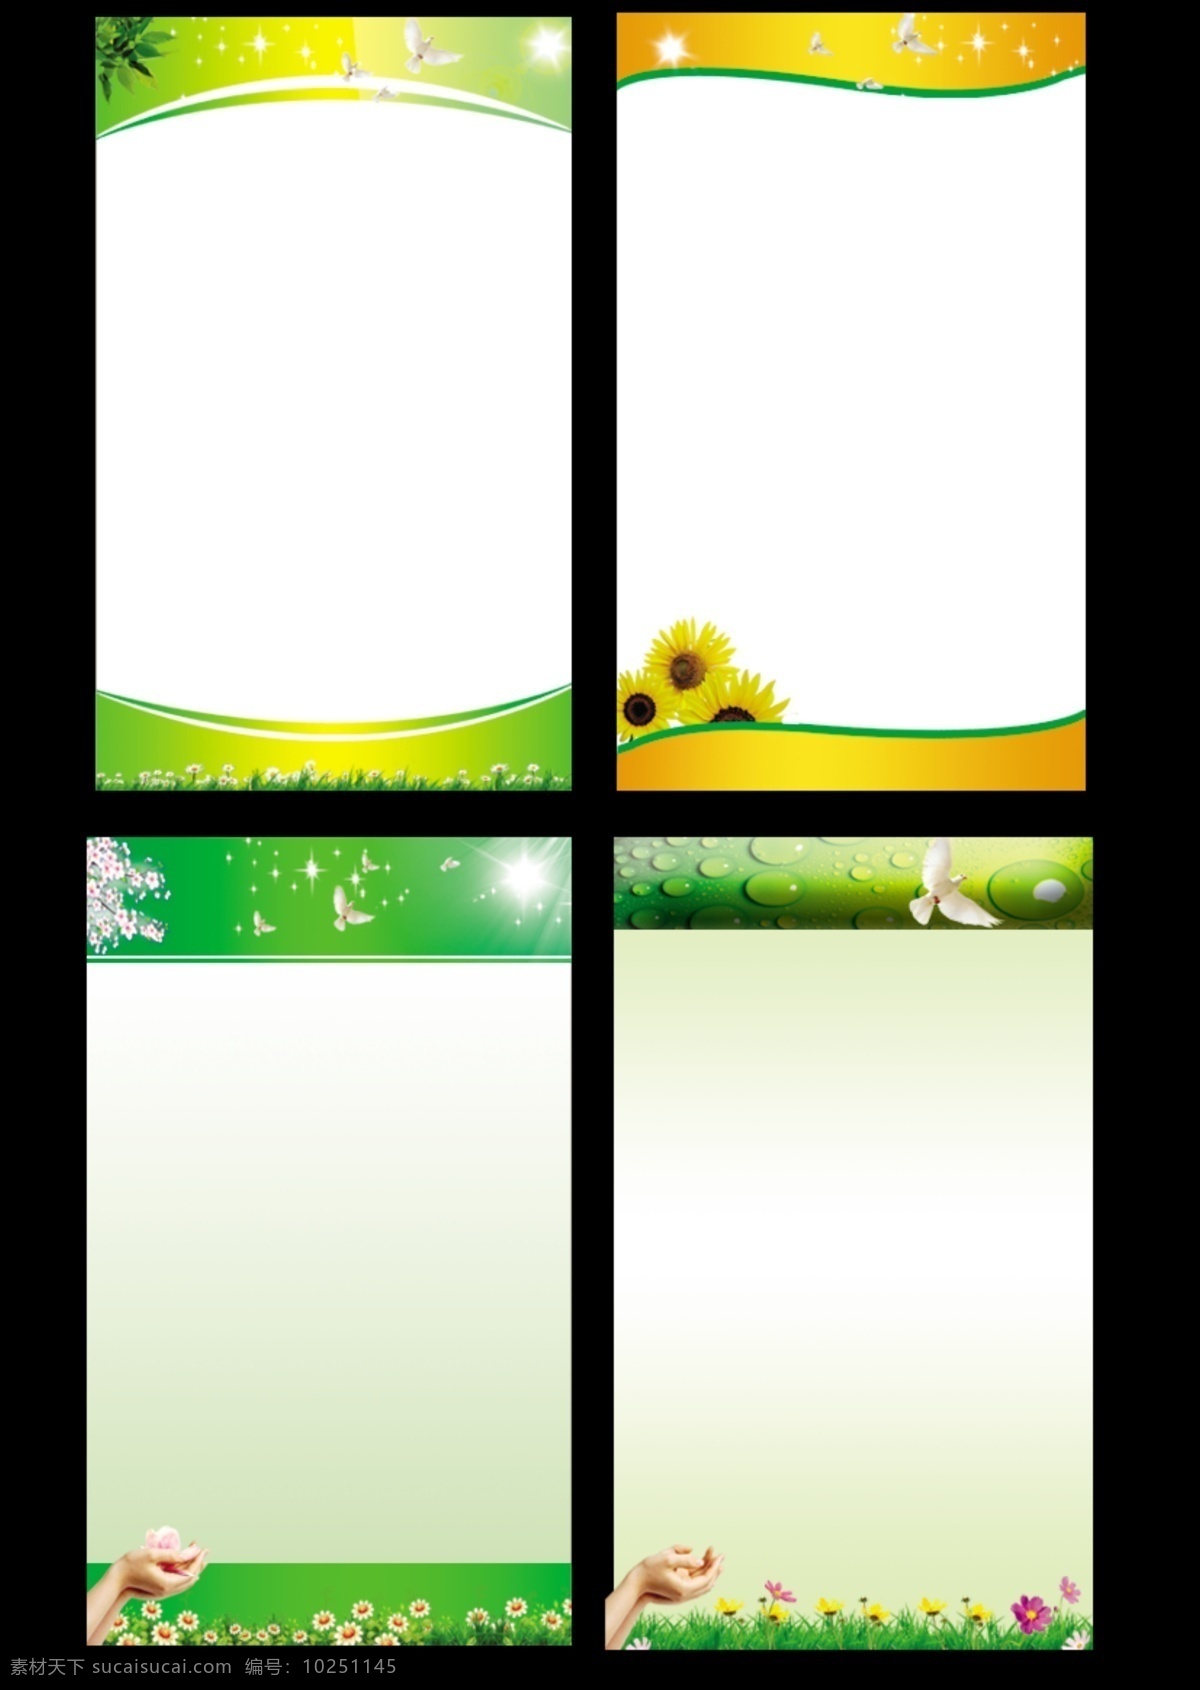 草 大雁 广告设计模板 花 手 树叶 桃花 向日葵 制度背景 制度背景模板 制度展板 阳光 星星 制度牌 展板模板 源文件 其他展板设计